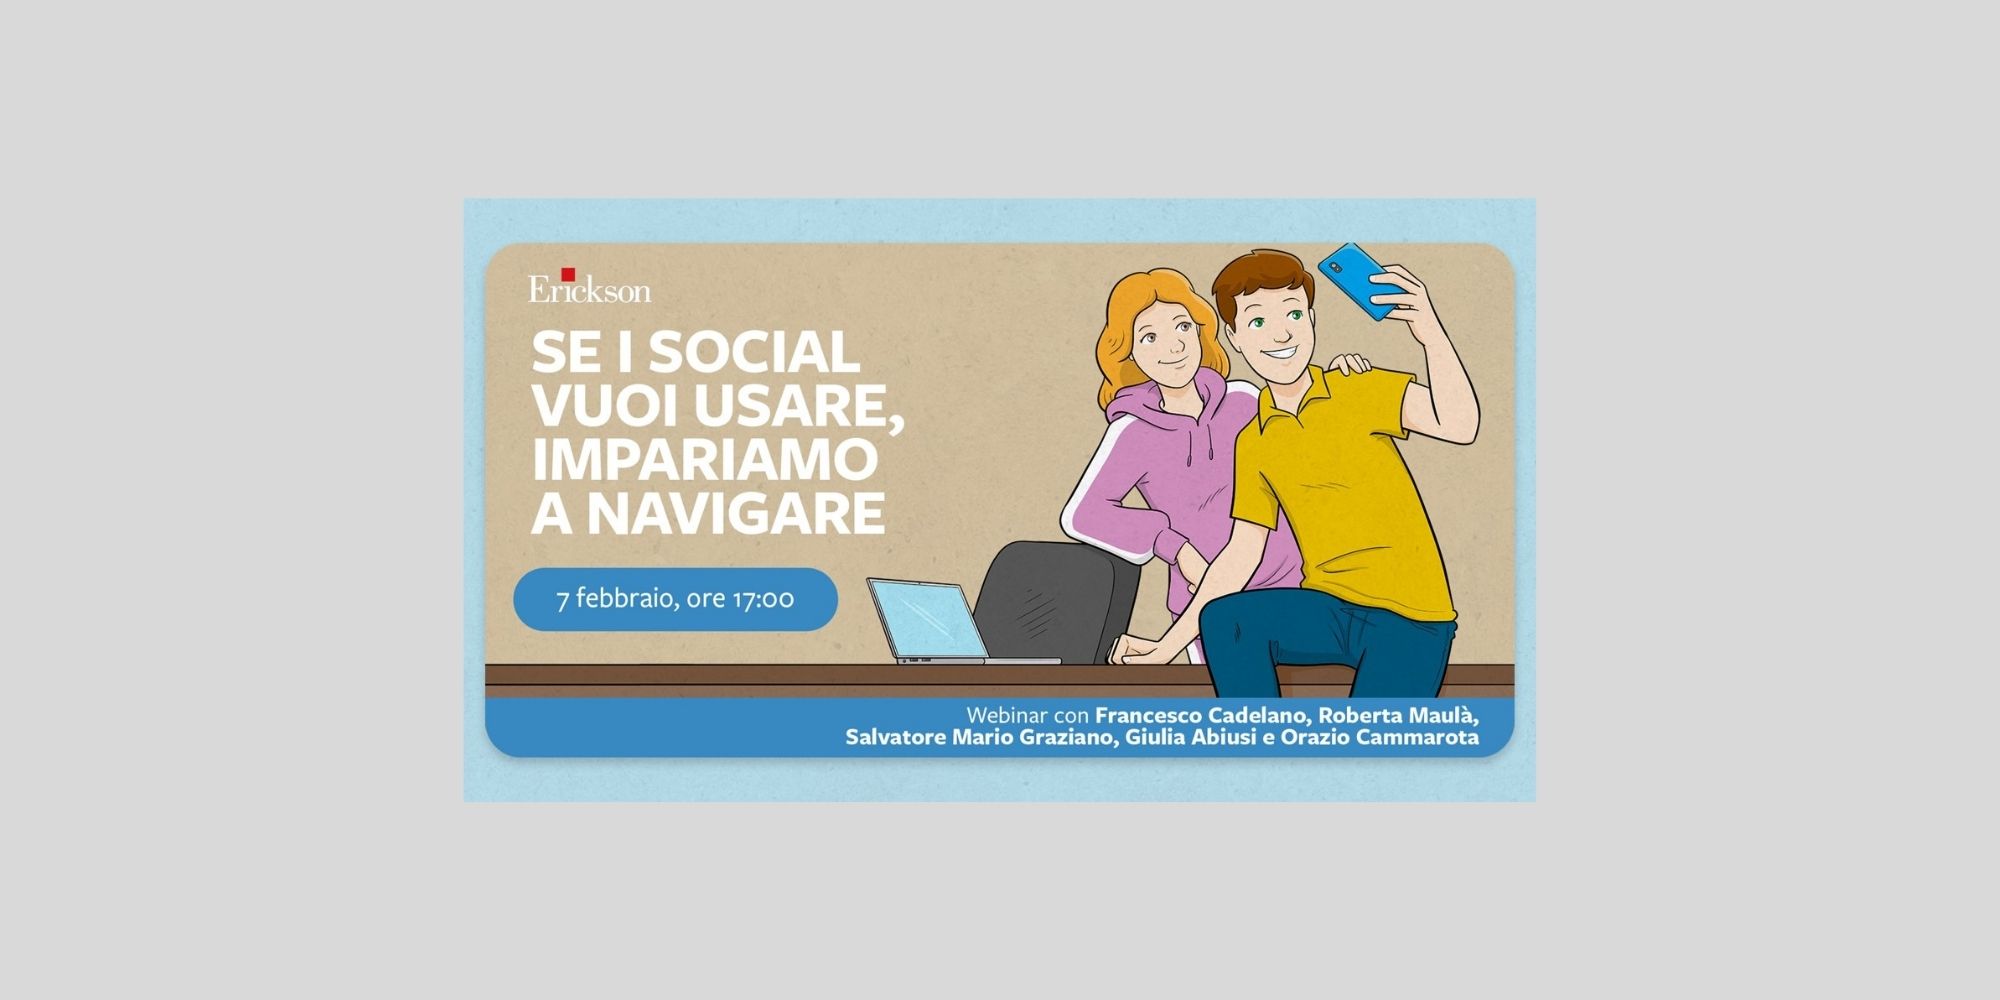 locandina webinar Erickson "Se i social vuoi usare"